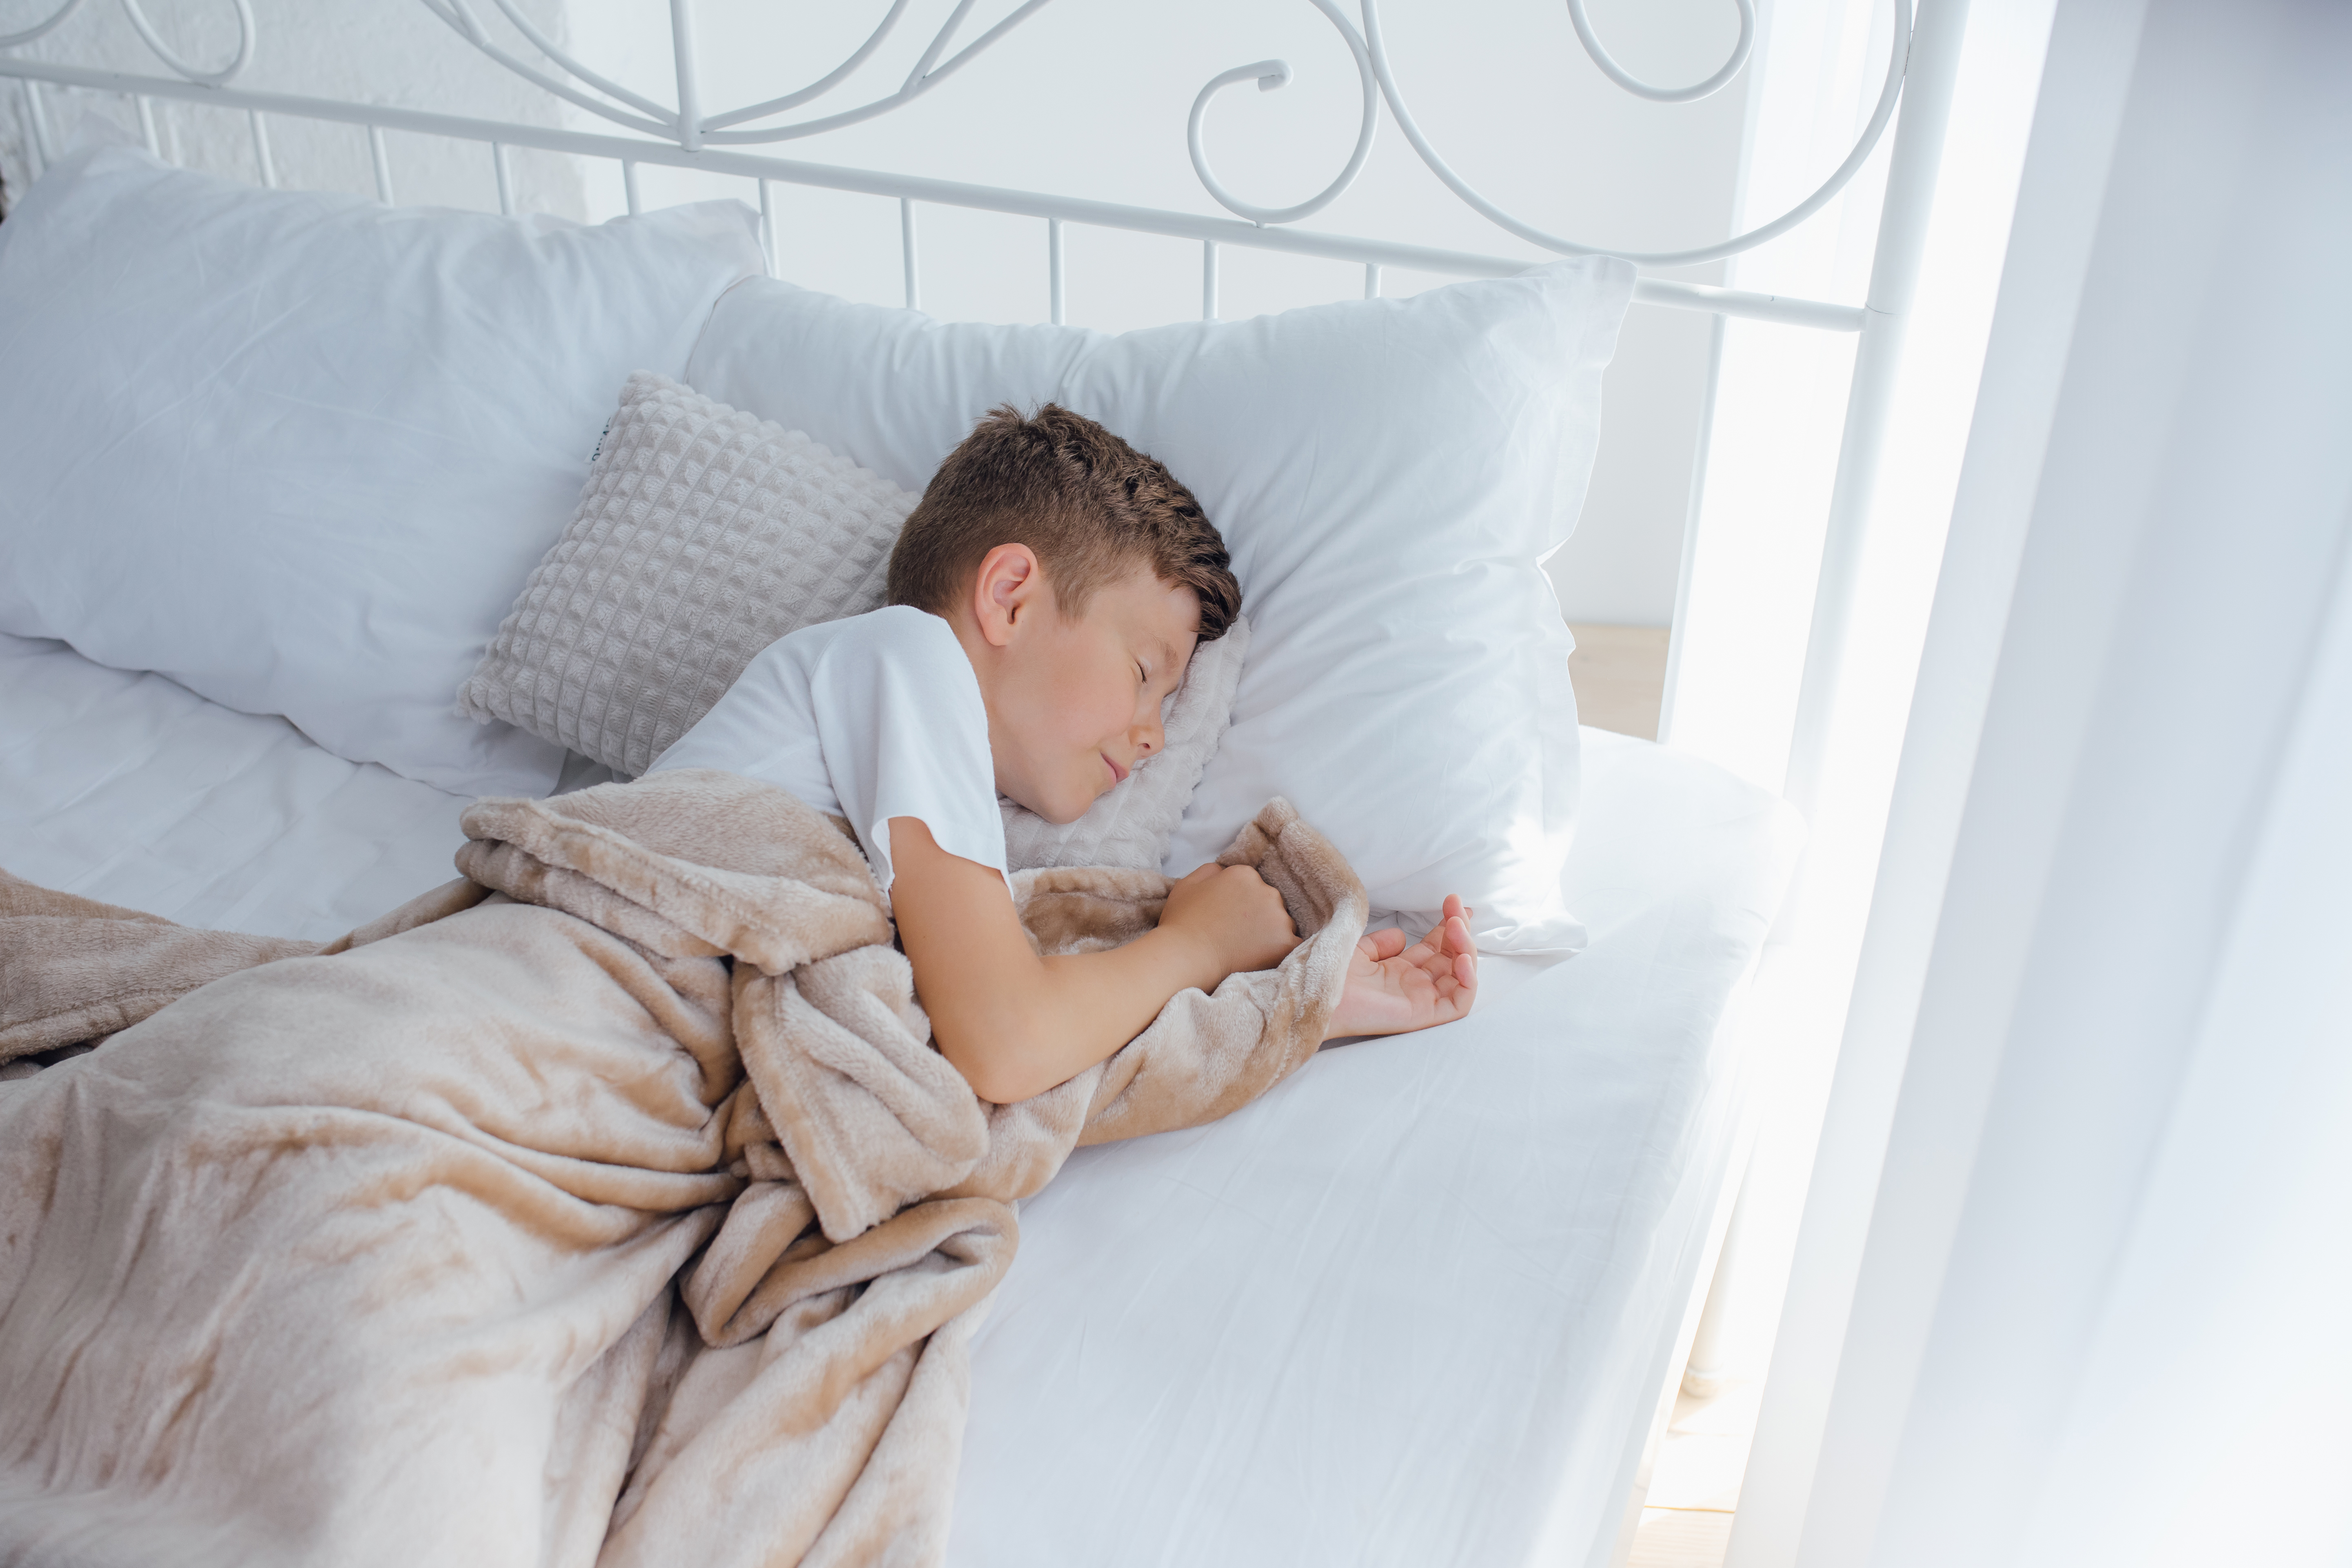 Az alvás mennyisége és időzítése fontos az érzelemfeldolgozásban részt vevő agyi régiók működéséhez. (Forrás: Envato Elements)